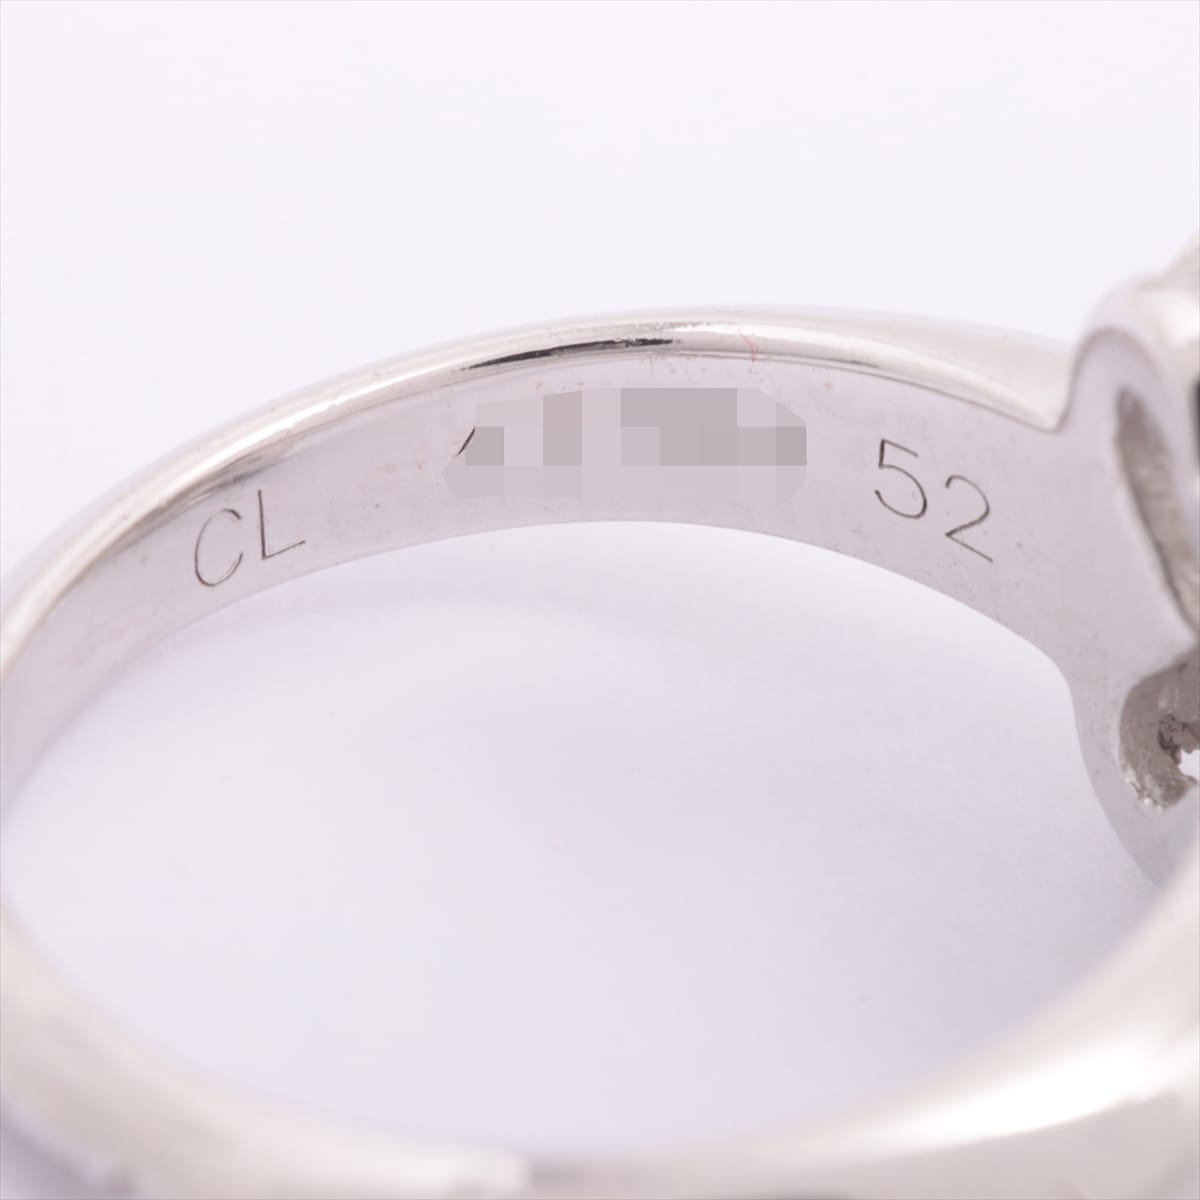 Van Cleef & Arpels Trefle diamond rings 750(WG) 6.0g 52